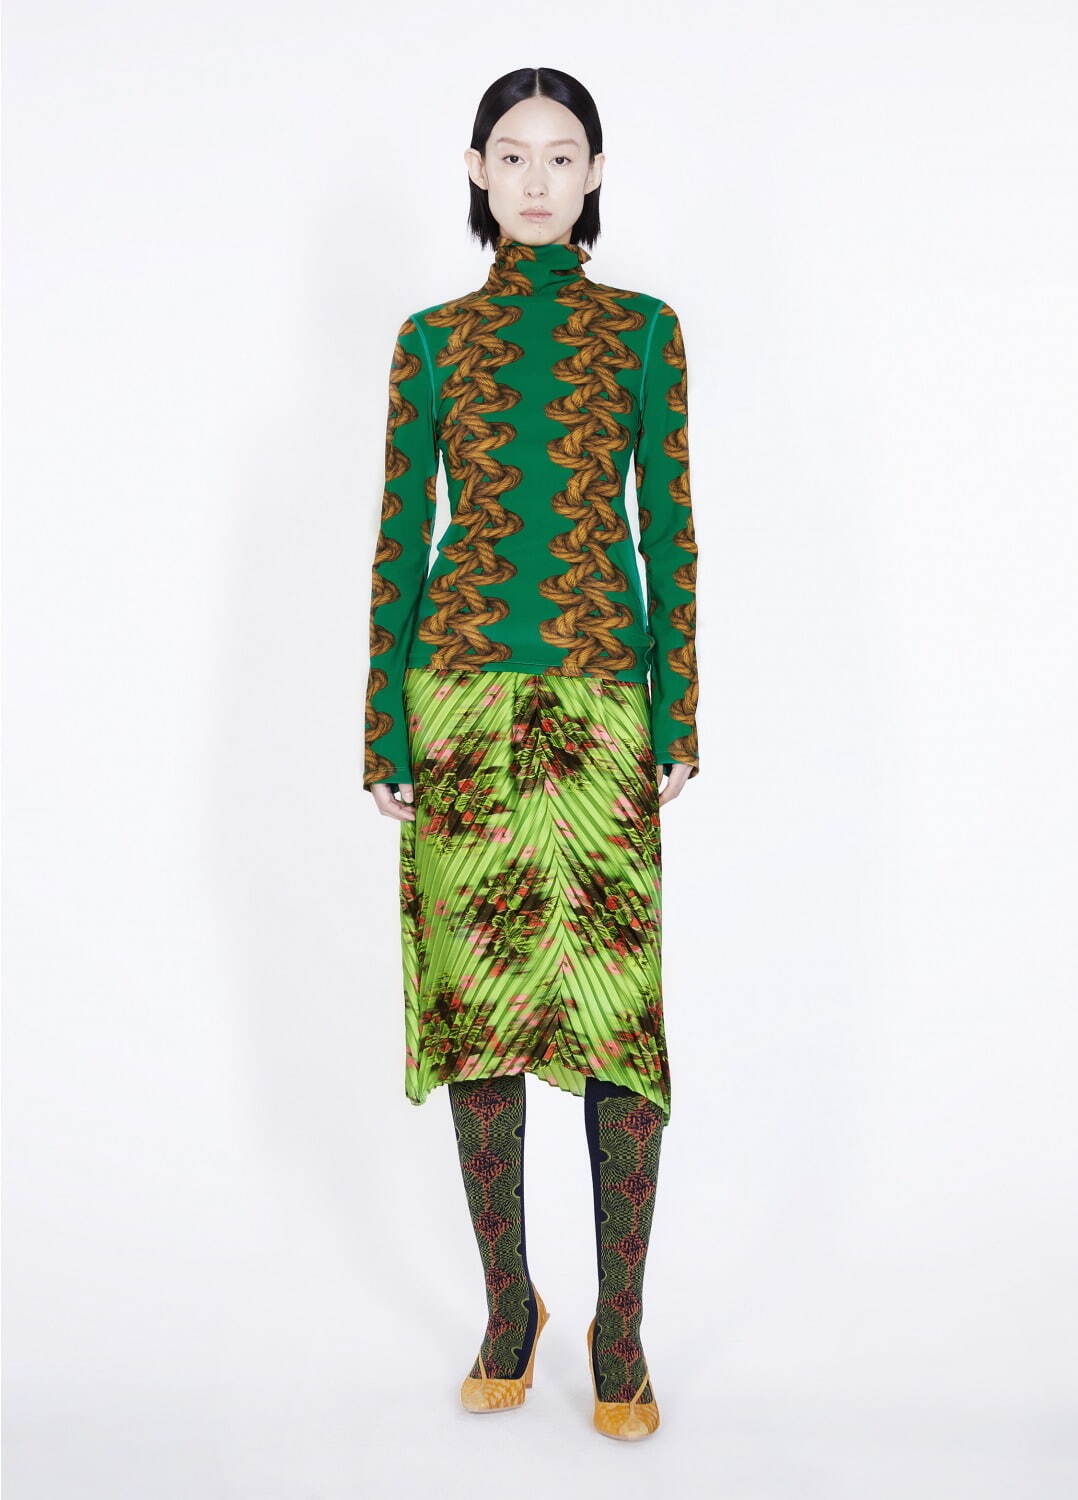 トップス(Knotted-pattern High-neck Stretch-nylon Top) 15,400円
スカート(Light and Shadow Flower Technical-pleated Skirt) 19,800円